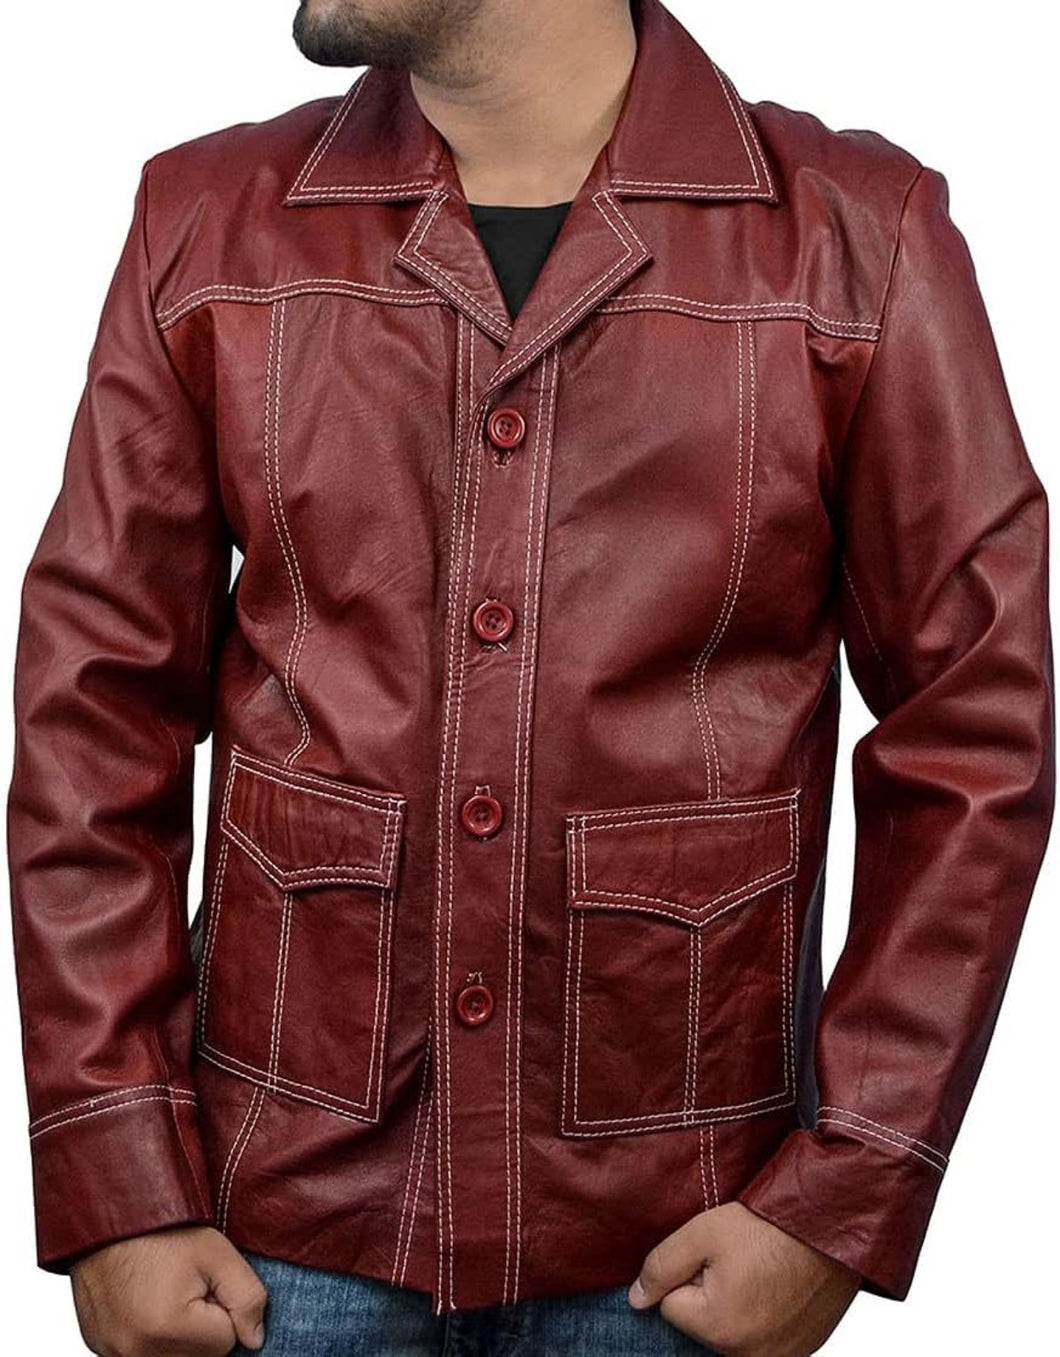 Men's Thick Stylish Maroon Leather Jacket